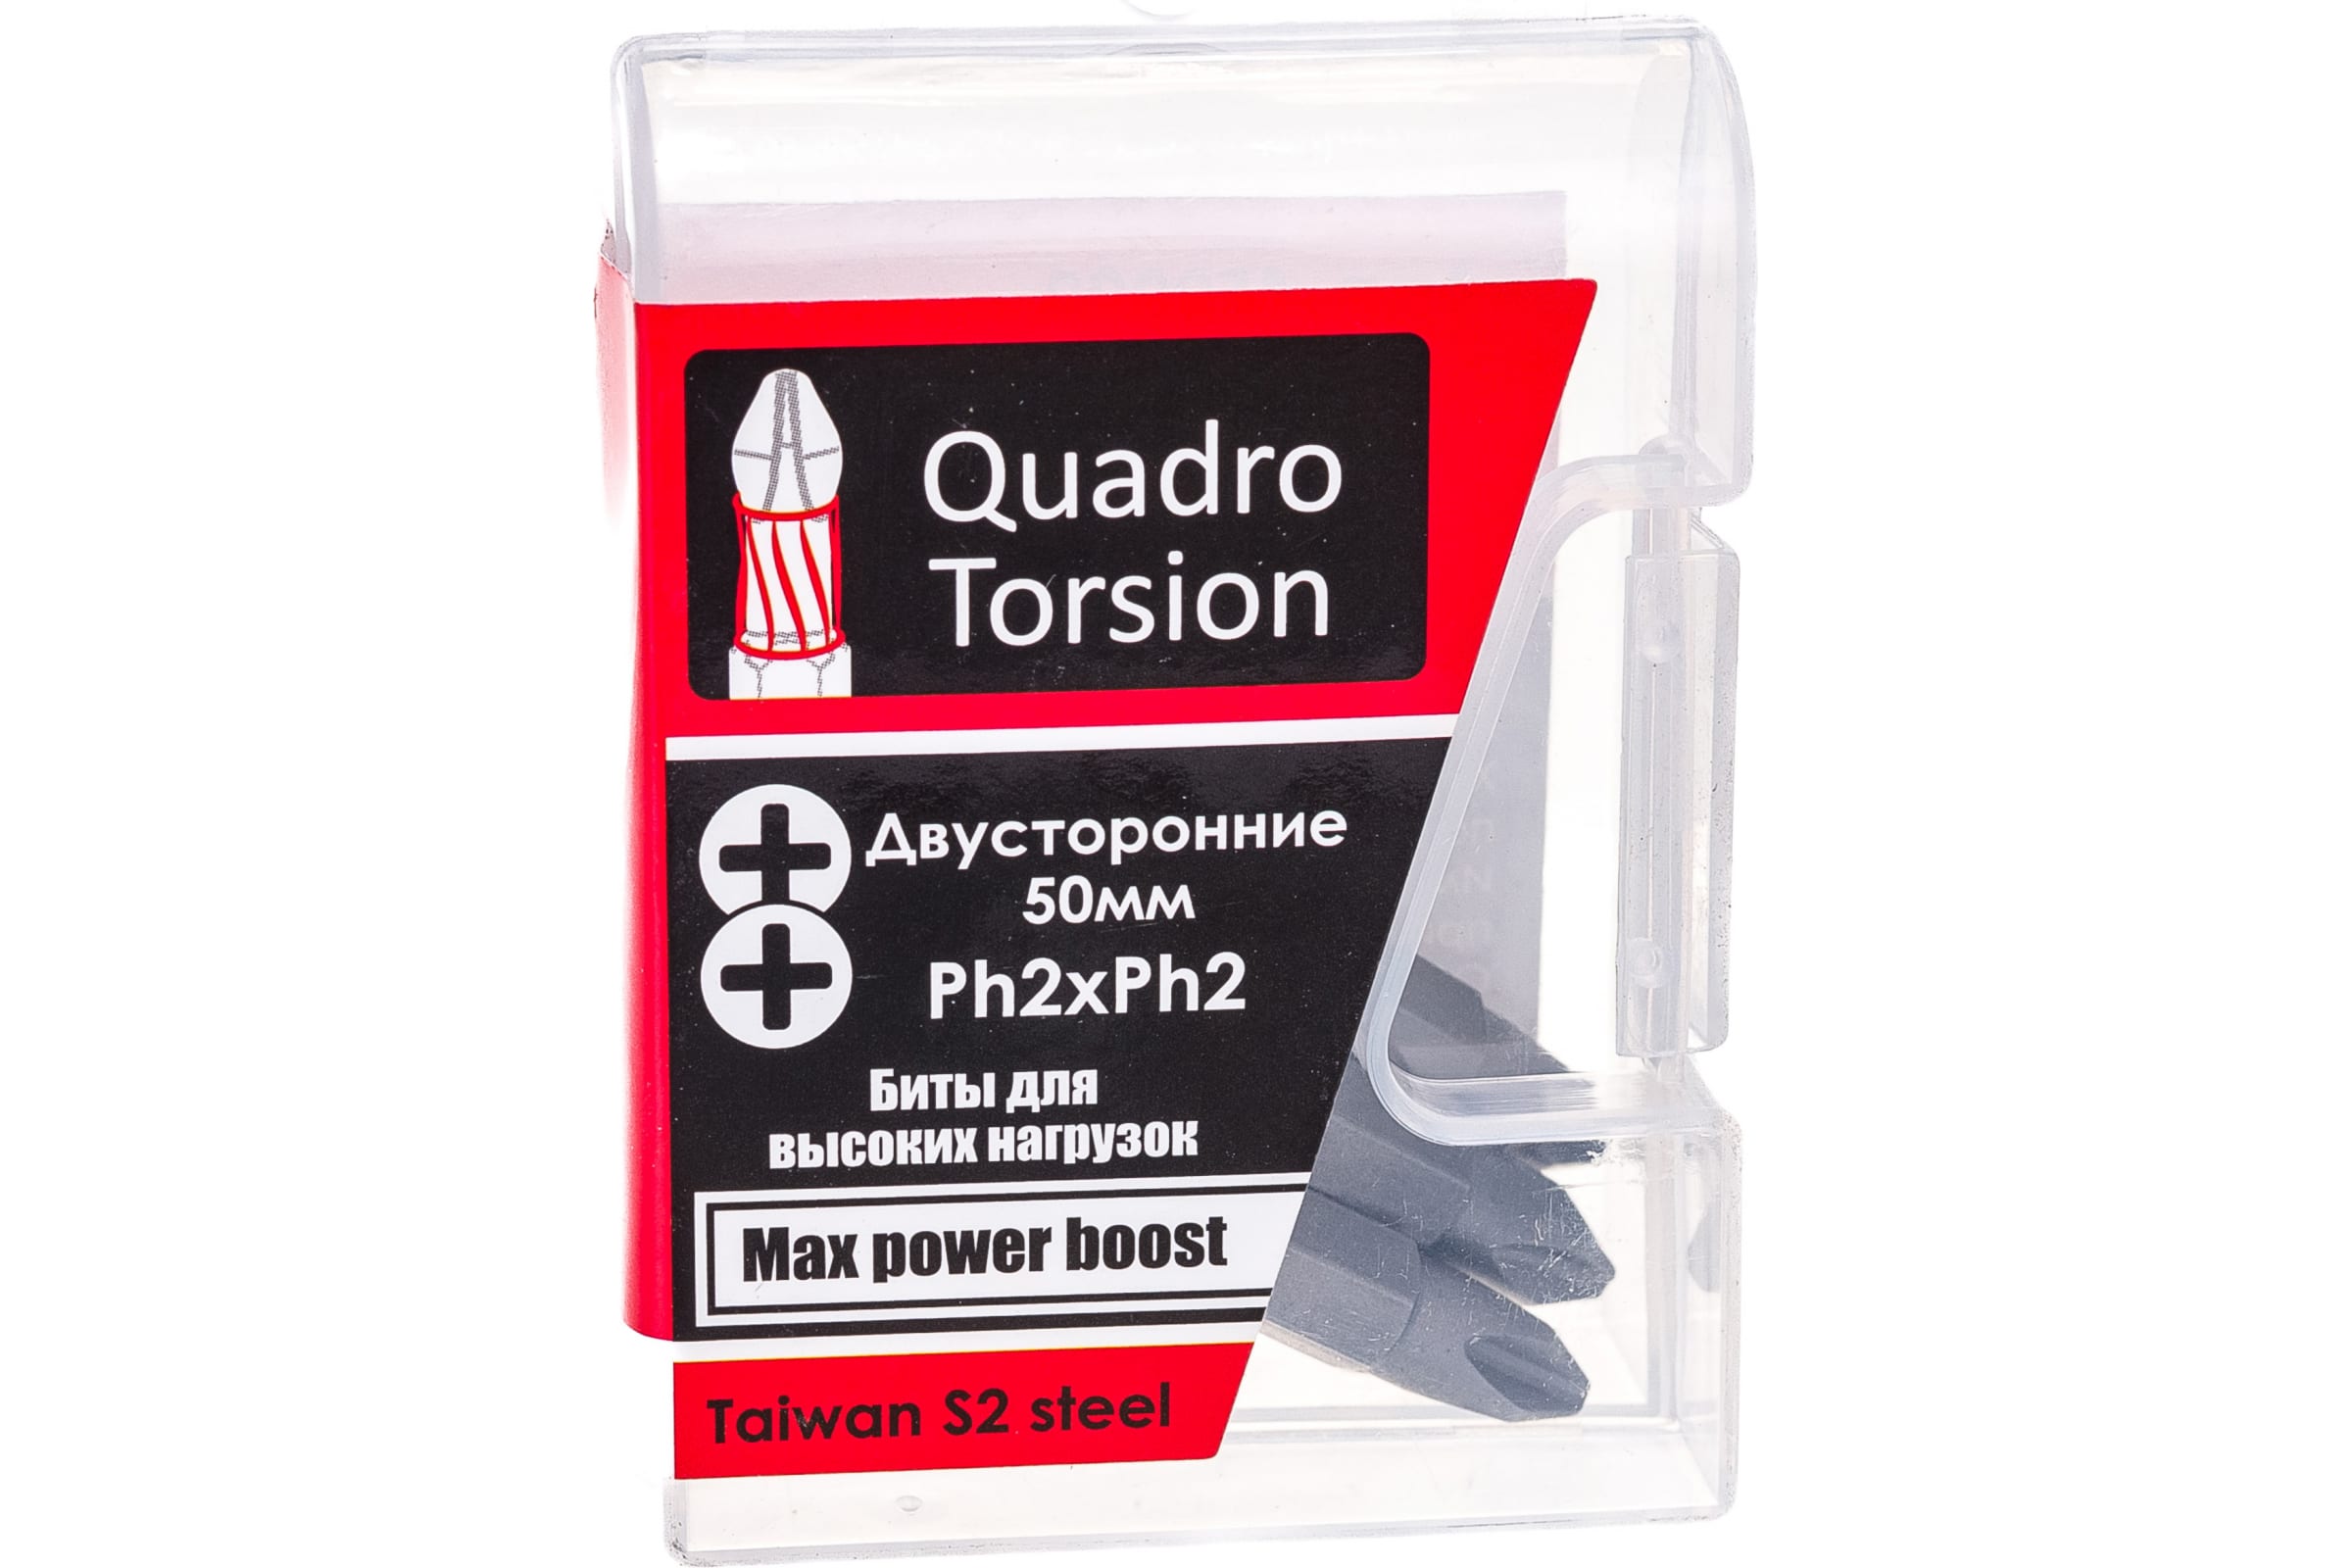 Quadro Torsion бита 1/4 двусторонняя Ph2xPh2 - 50мм 5шт./кор. 450022 доска магнитная двусторонняя 30 × 20 см